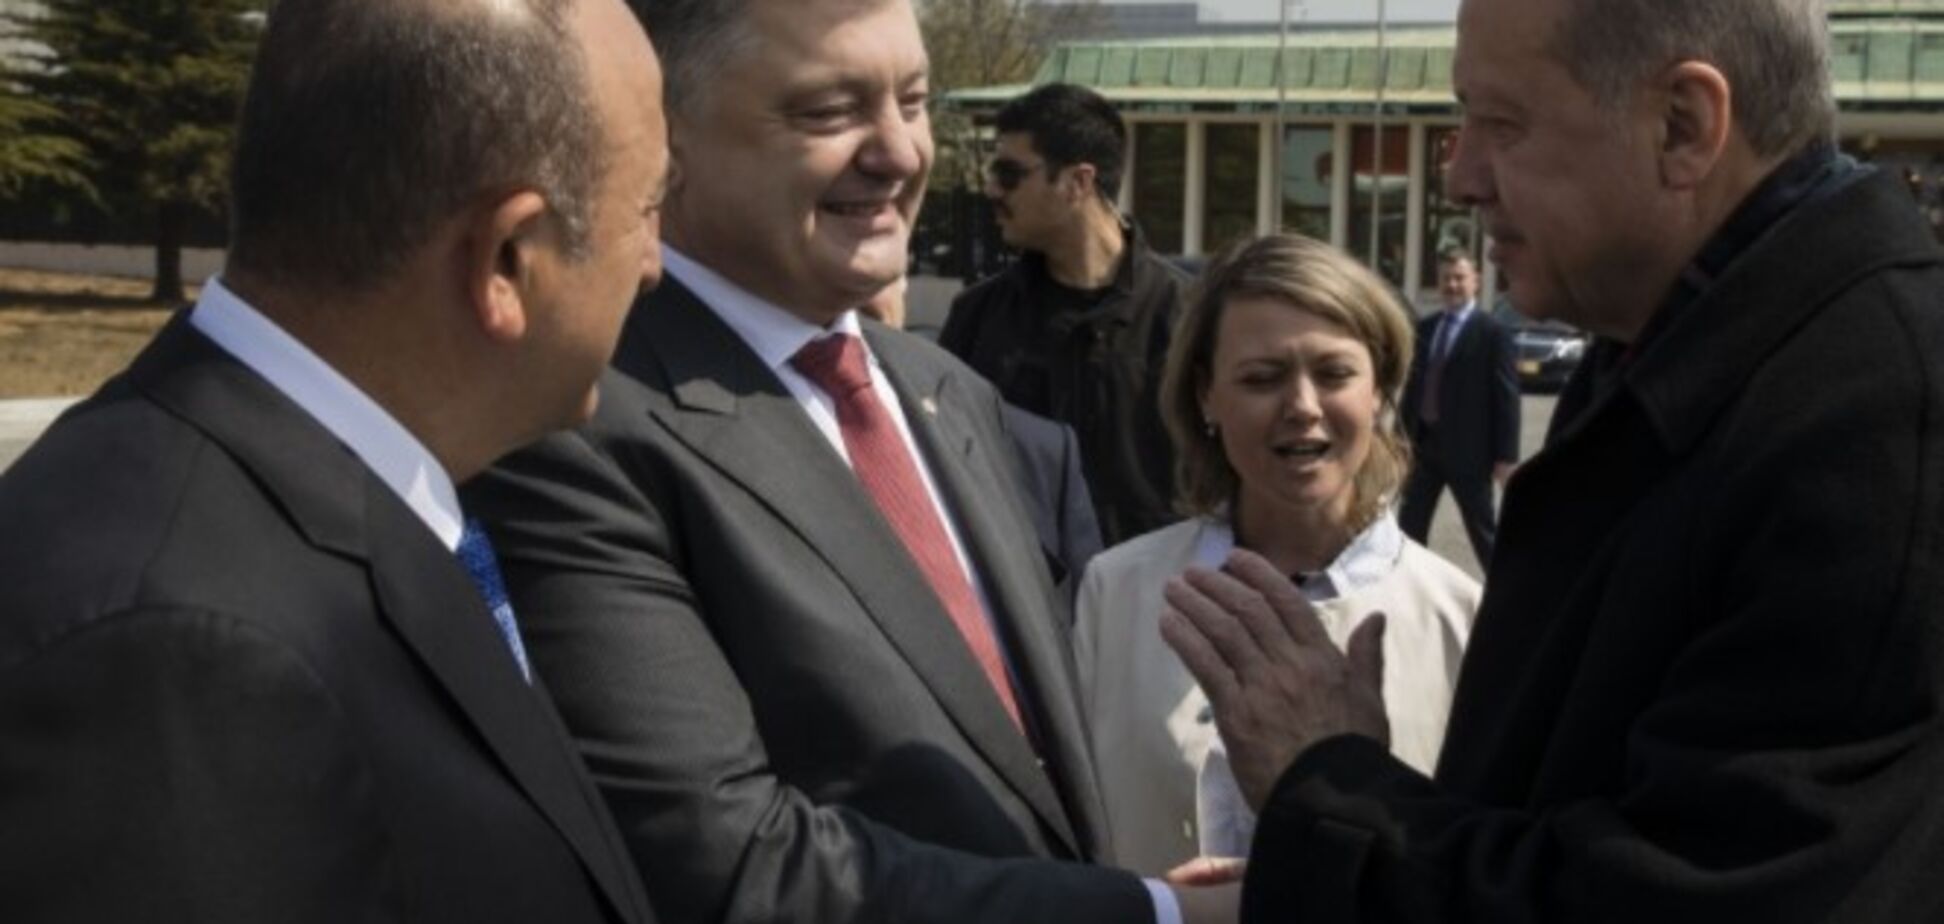 Турки на Донбассе: о чем договорились Порошенко и Эрдоган